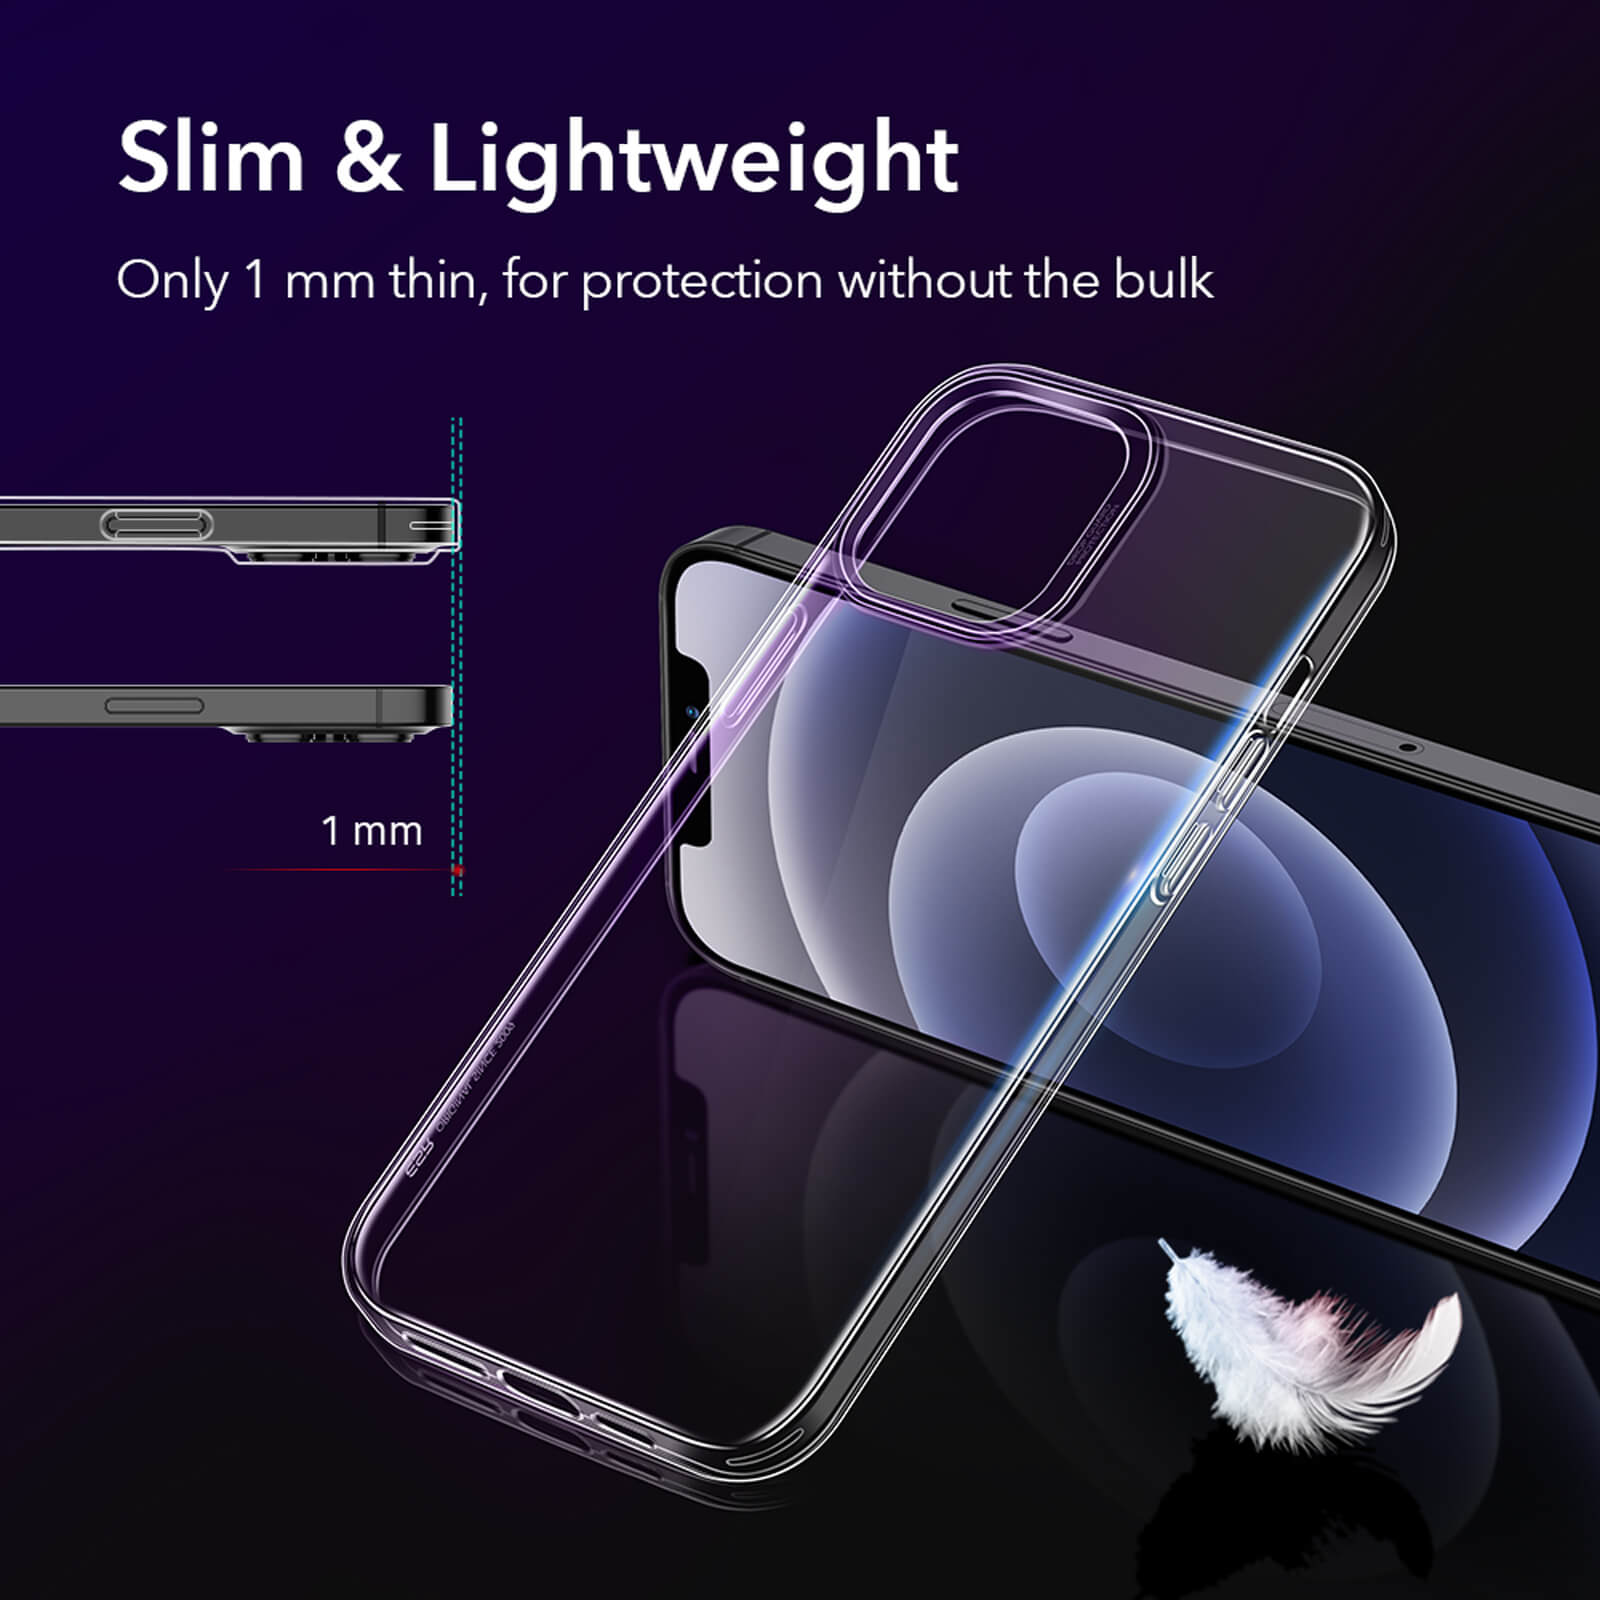 Ốp lưng cho iPhone 12 Pro / iPhone 12 6.1 inch chống sốc siêu mỏng 1mm Hiệu Memumi Glitter Độ trong tuyệt đối, chống trầy xước, chống ố vàng, tản nhiệt tốt - Hàng nhập khẩu